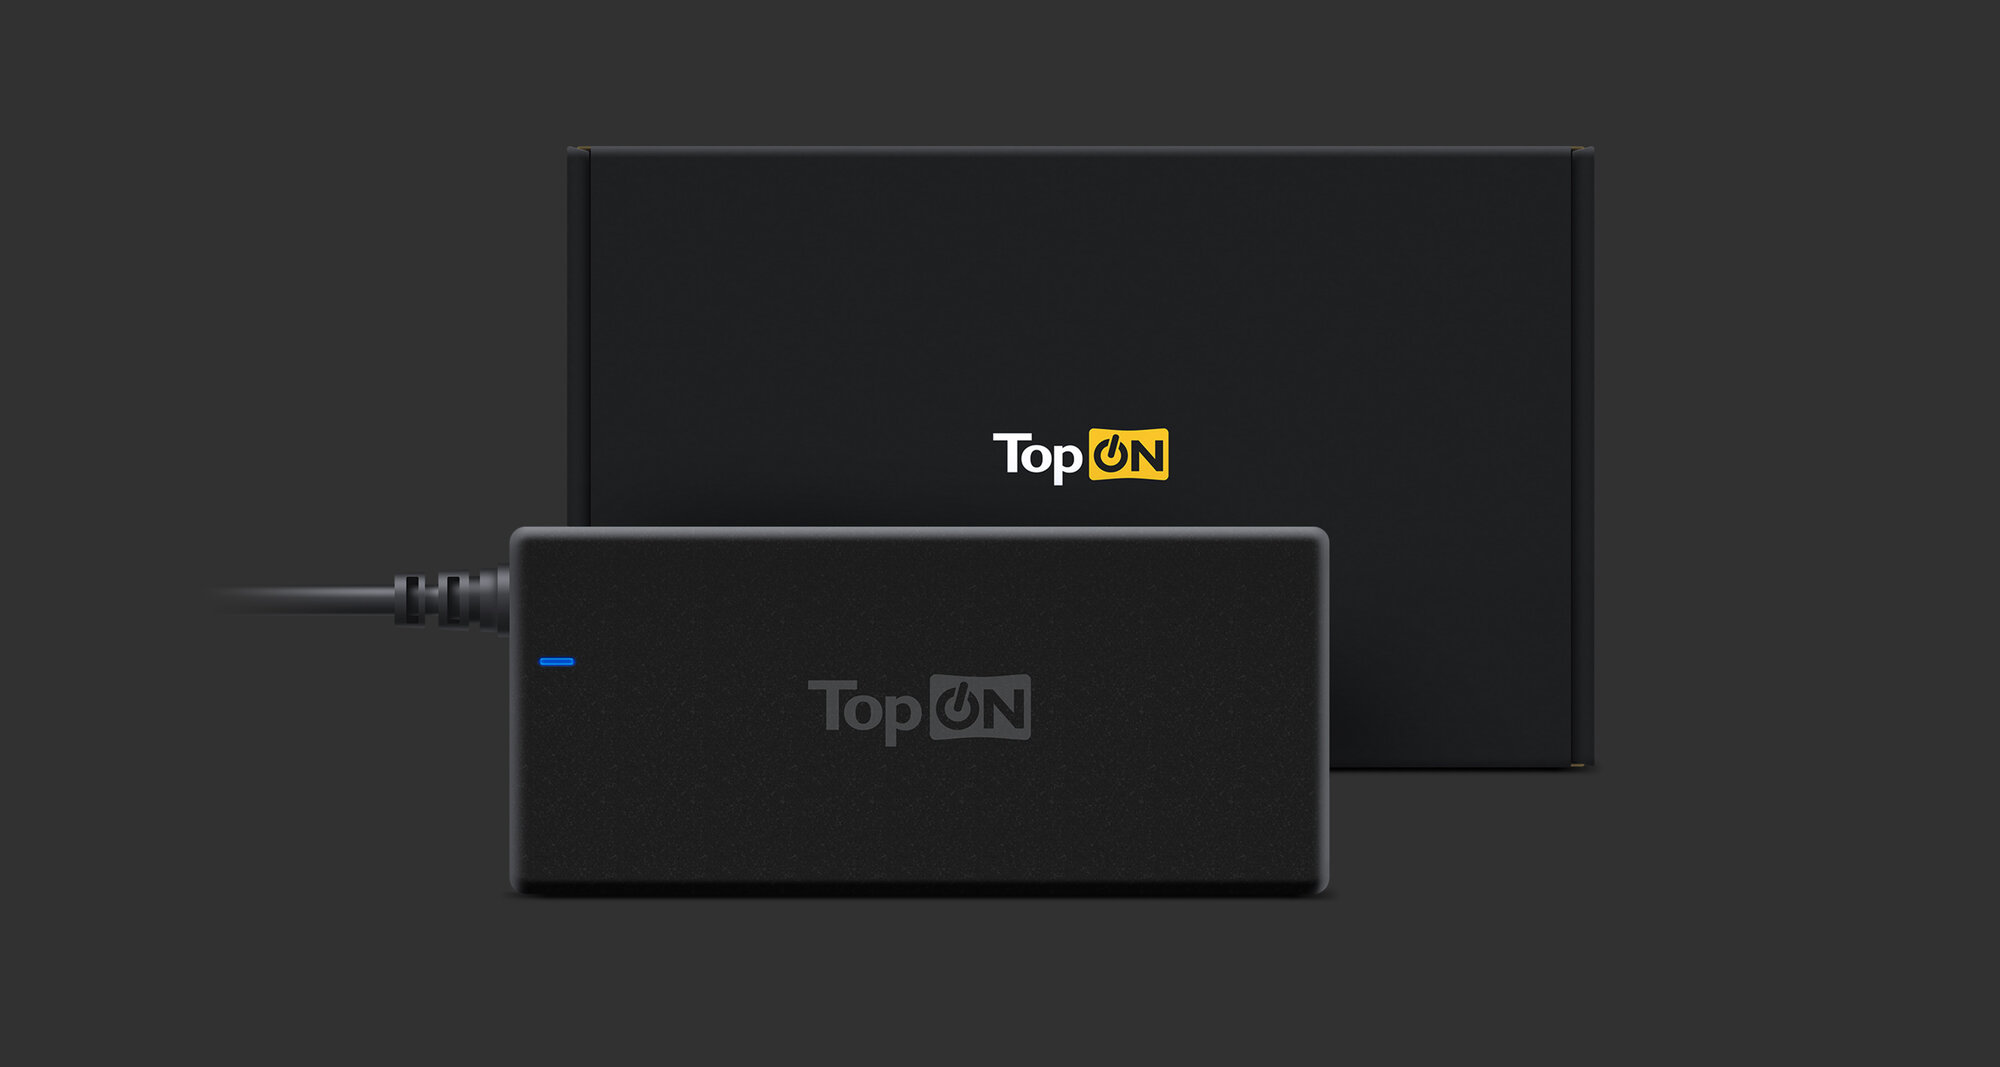 Блок питания TopON 45W кабель Type-C, Power Delivery, Quick Charge 3.0, в розетку, кабель 180 см TOP-UC45. Черный.